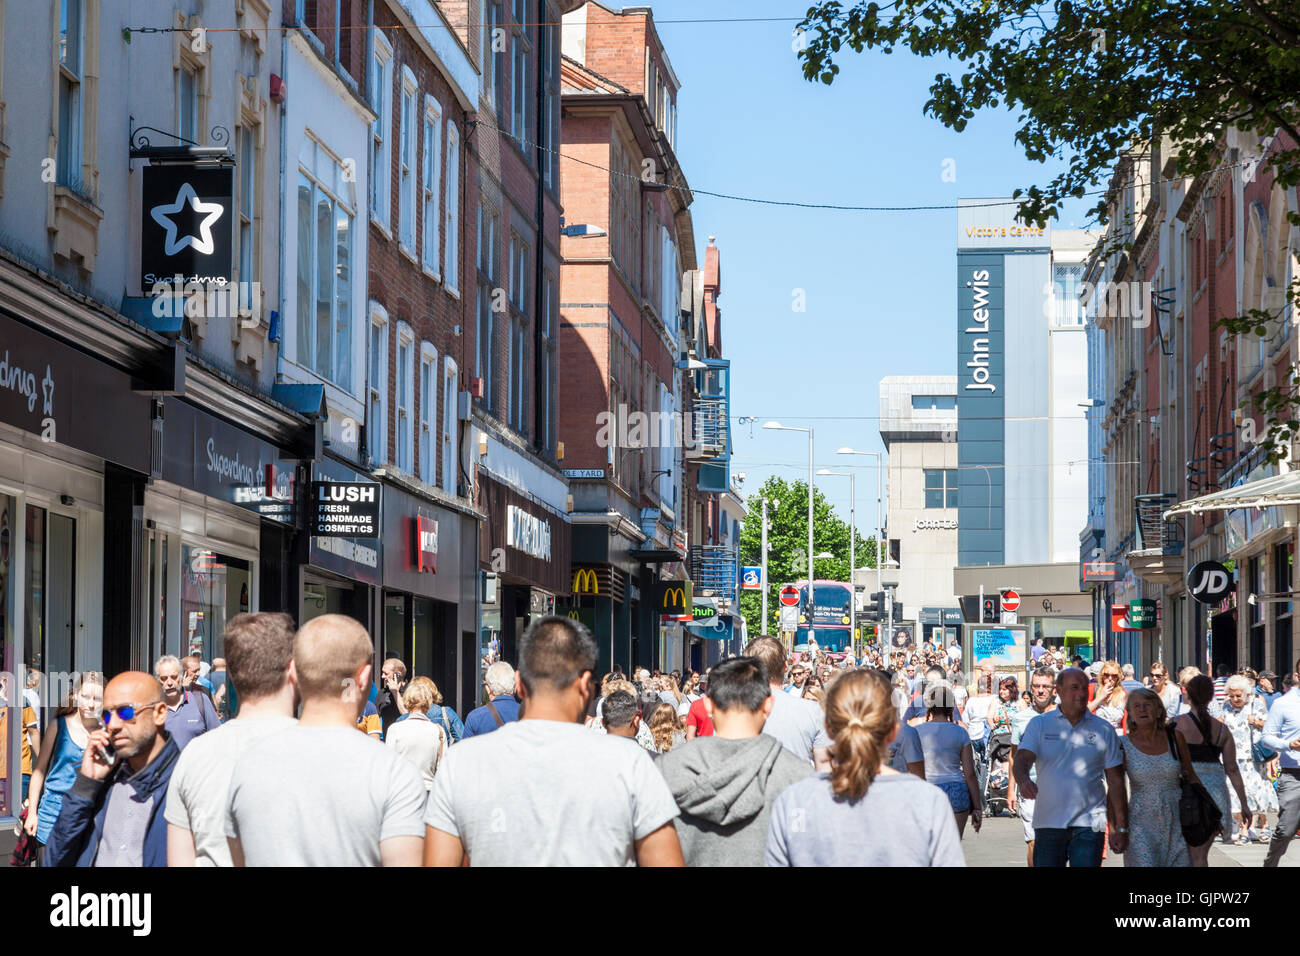 Foule de gens. La foule des acheteurs sur l'une des principales rues commerçantes dans le centre-ville de Nottingham, Angleterre, RU Banque D'Images